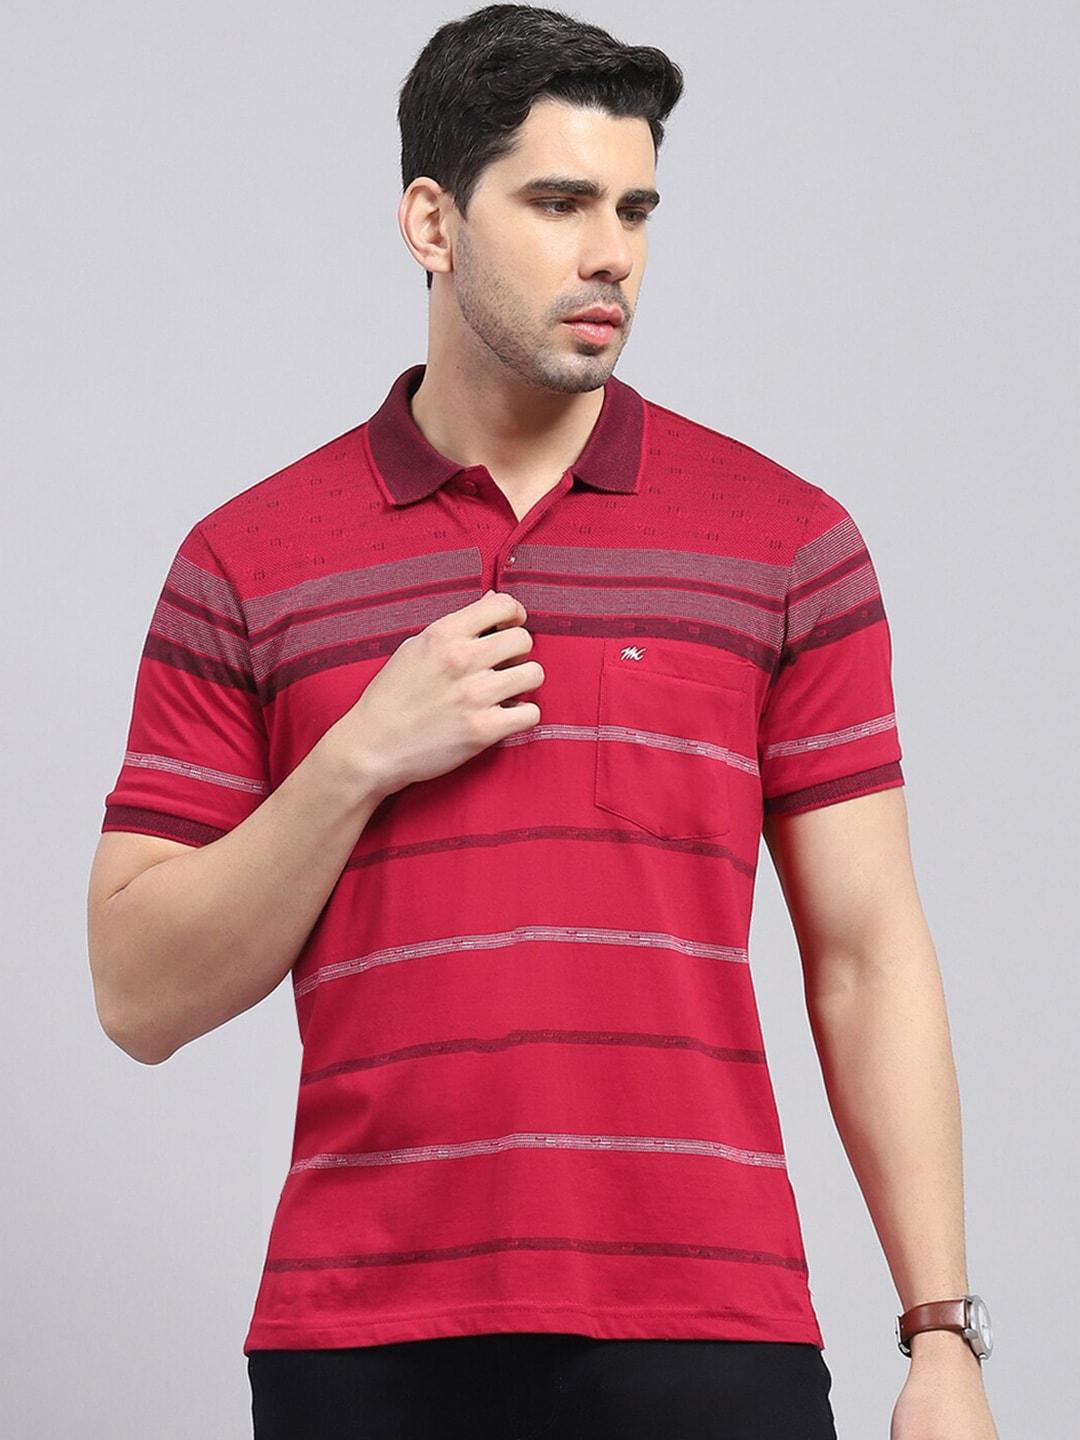 monte-carlo-summer-striped-polo-collar-cotton-t-shirt